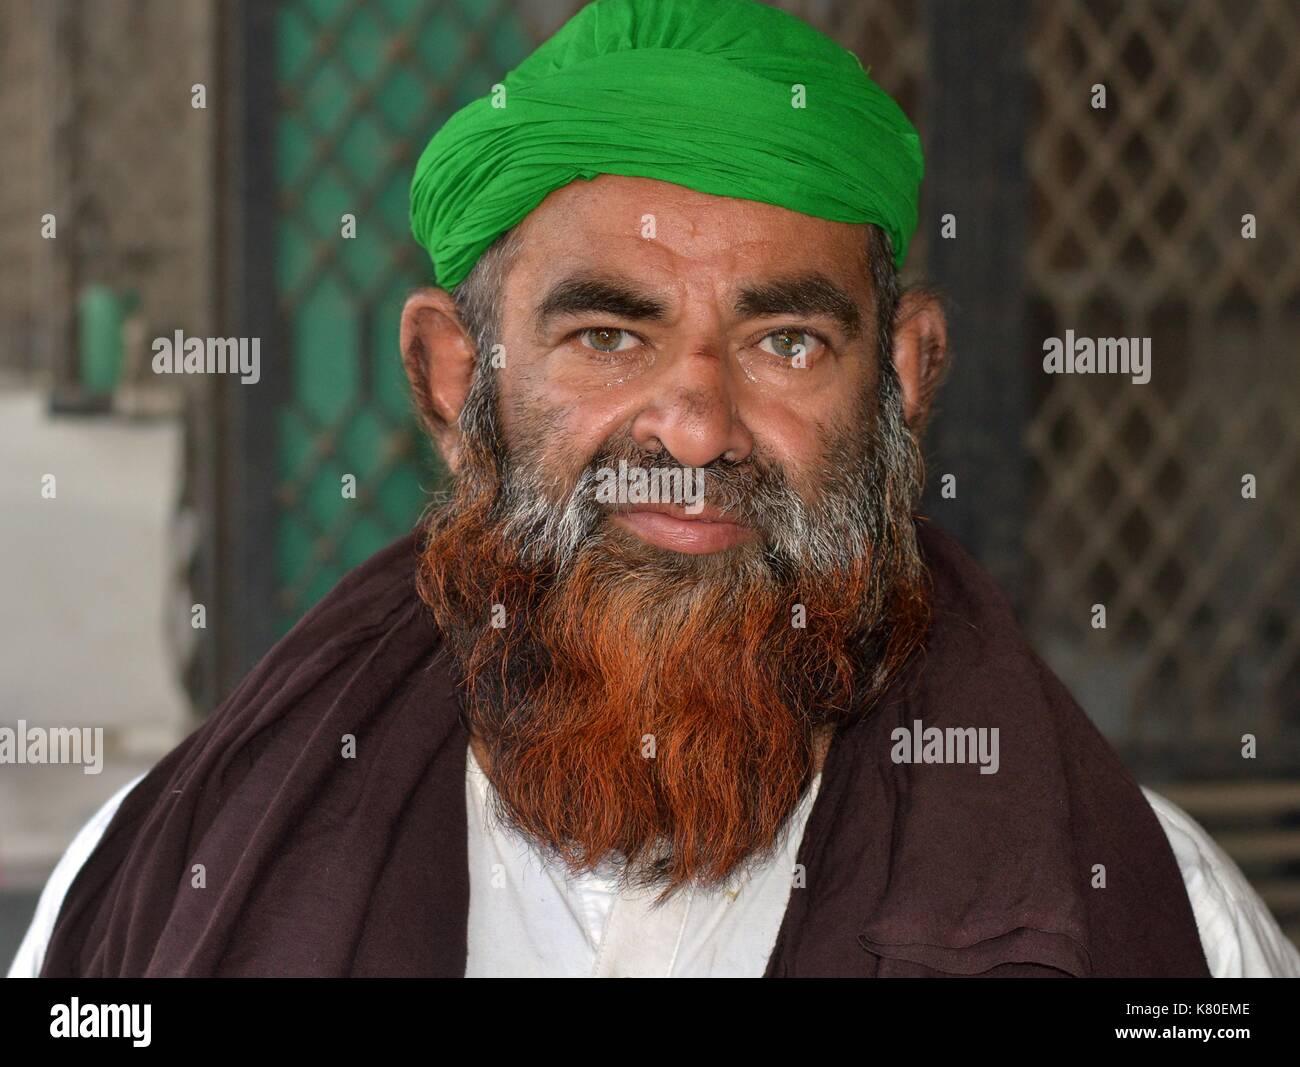 Älterer großer indischer Moslem-Mann mit Henna-gefärbtem Moslembart trägt einen grünen Turban und einen braunen Gebetssawl und stellt sich für die Kamera. Stockfoto